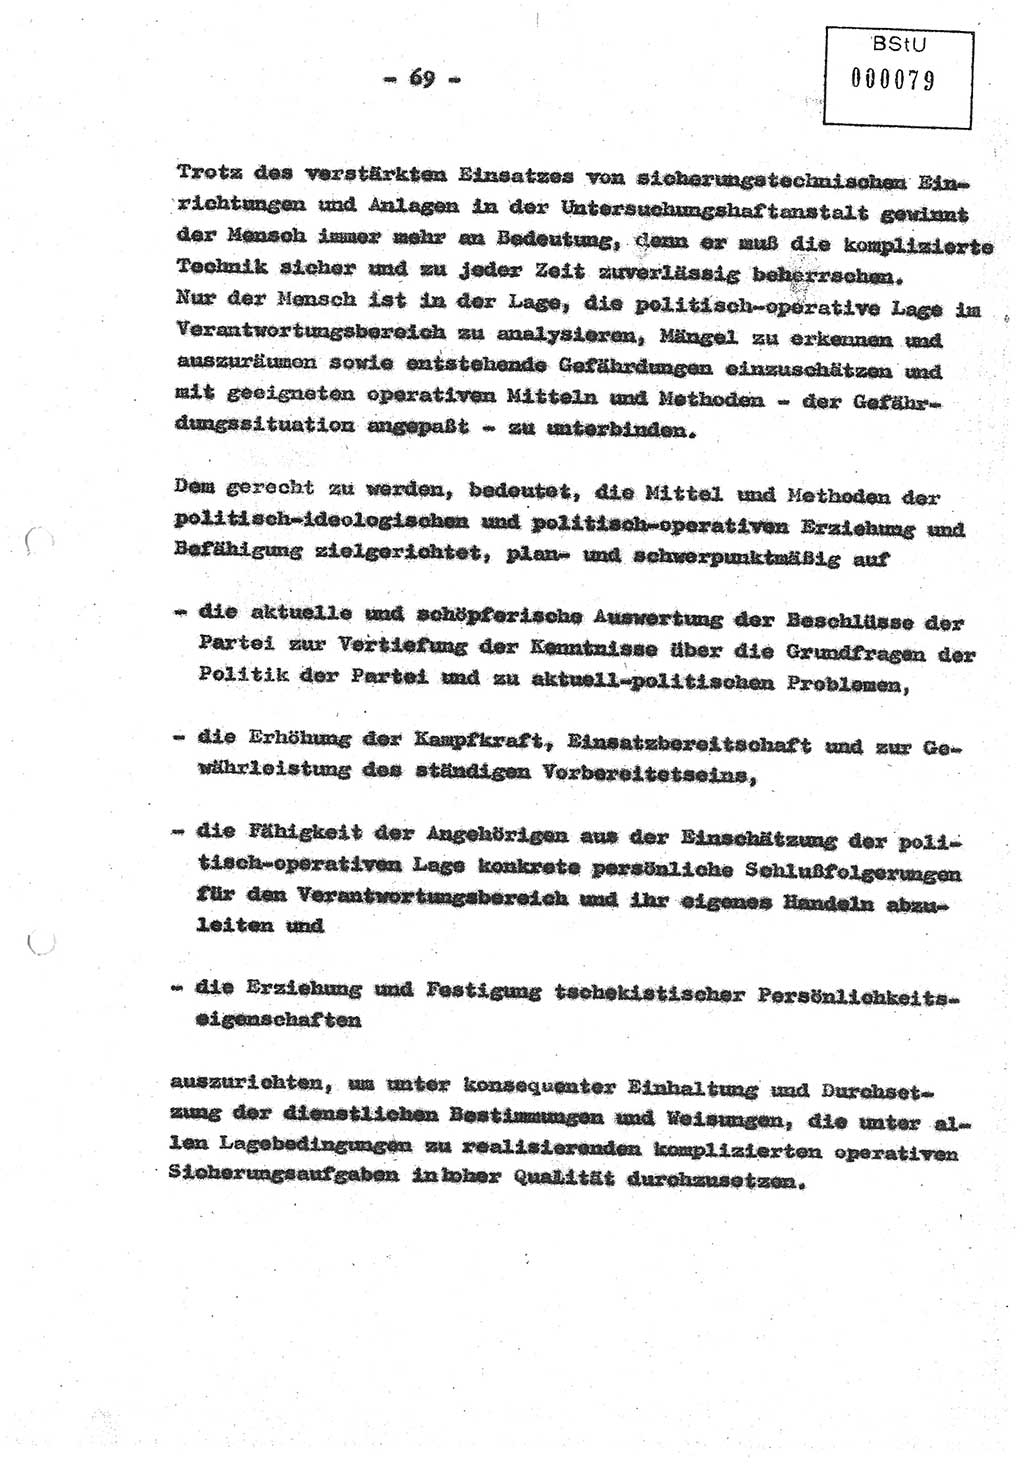 Diplomarbeit (Entwurf) Oberleutnant Peter Parke (Abt. ⅩⅣ), Ministerium für Staatssicherheit (MfS) [Deutsche Demokratische Republik (DDR)], Juristische Hochschule (JHS), Geheime Verschlußsache (GVS) o001-98/86, Potsdam 1986, Seite 79 (Dipl.-Arb. MfS DDR JHS GVS o001-98/86 1986, S. 79)